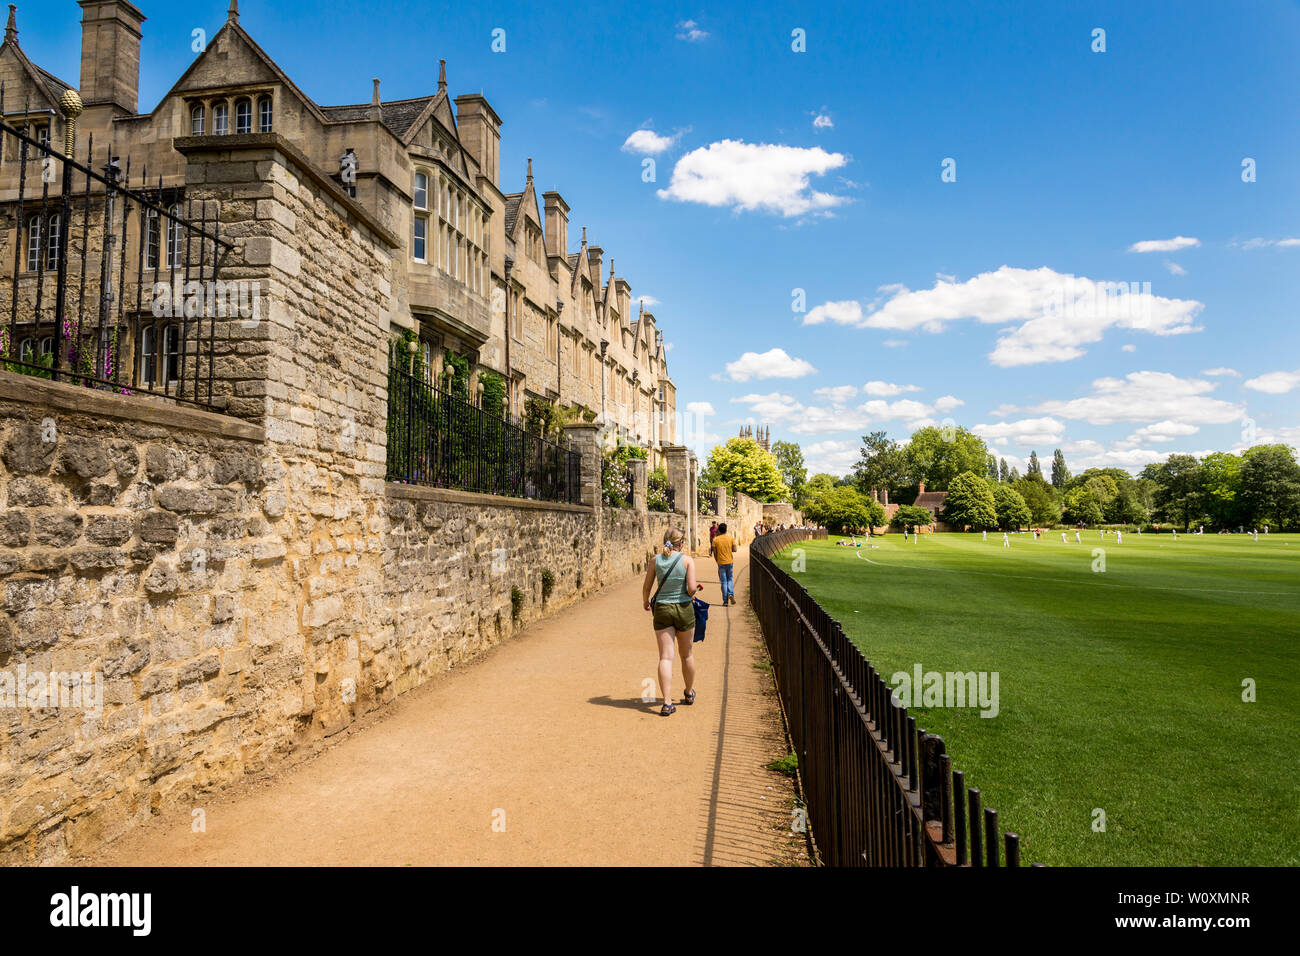 Il retro del Merton College nel sole sotto un cielo blu con nuvole bianche su una bella giornata estiva nella famosa città universitaria di Oxford. Foto Stock